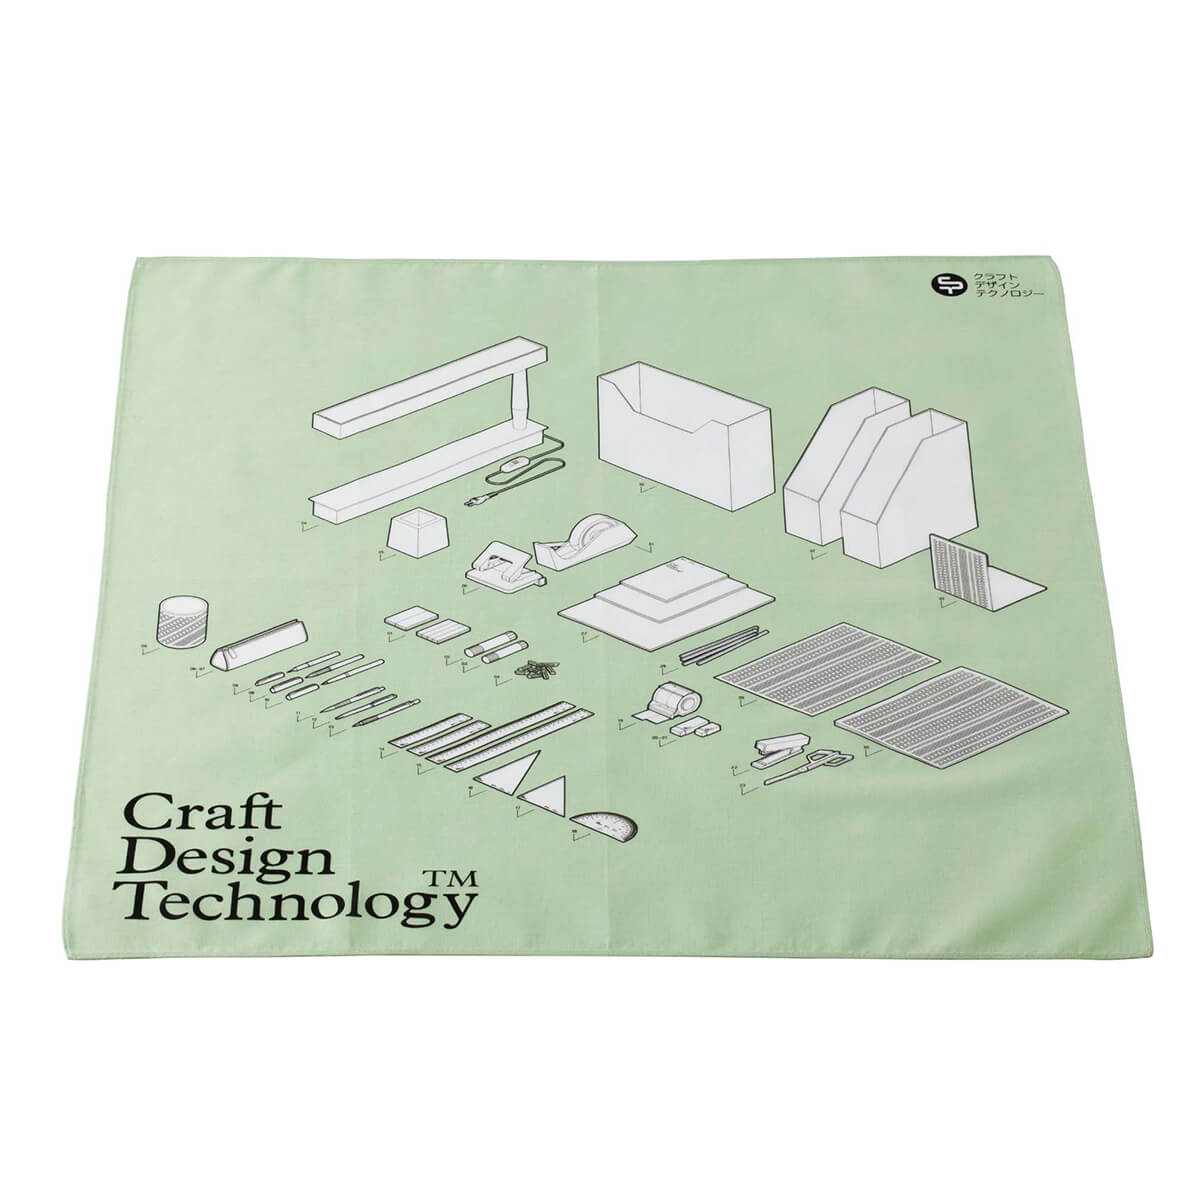 新品 Craft Design Technology ステーショナリーセット